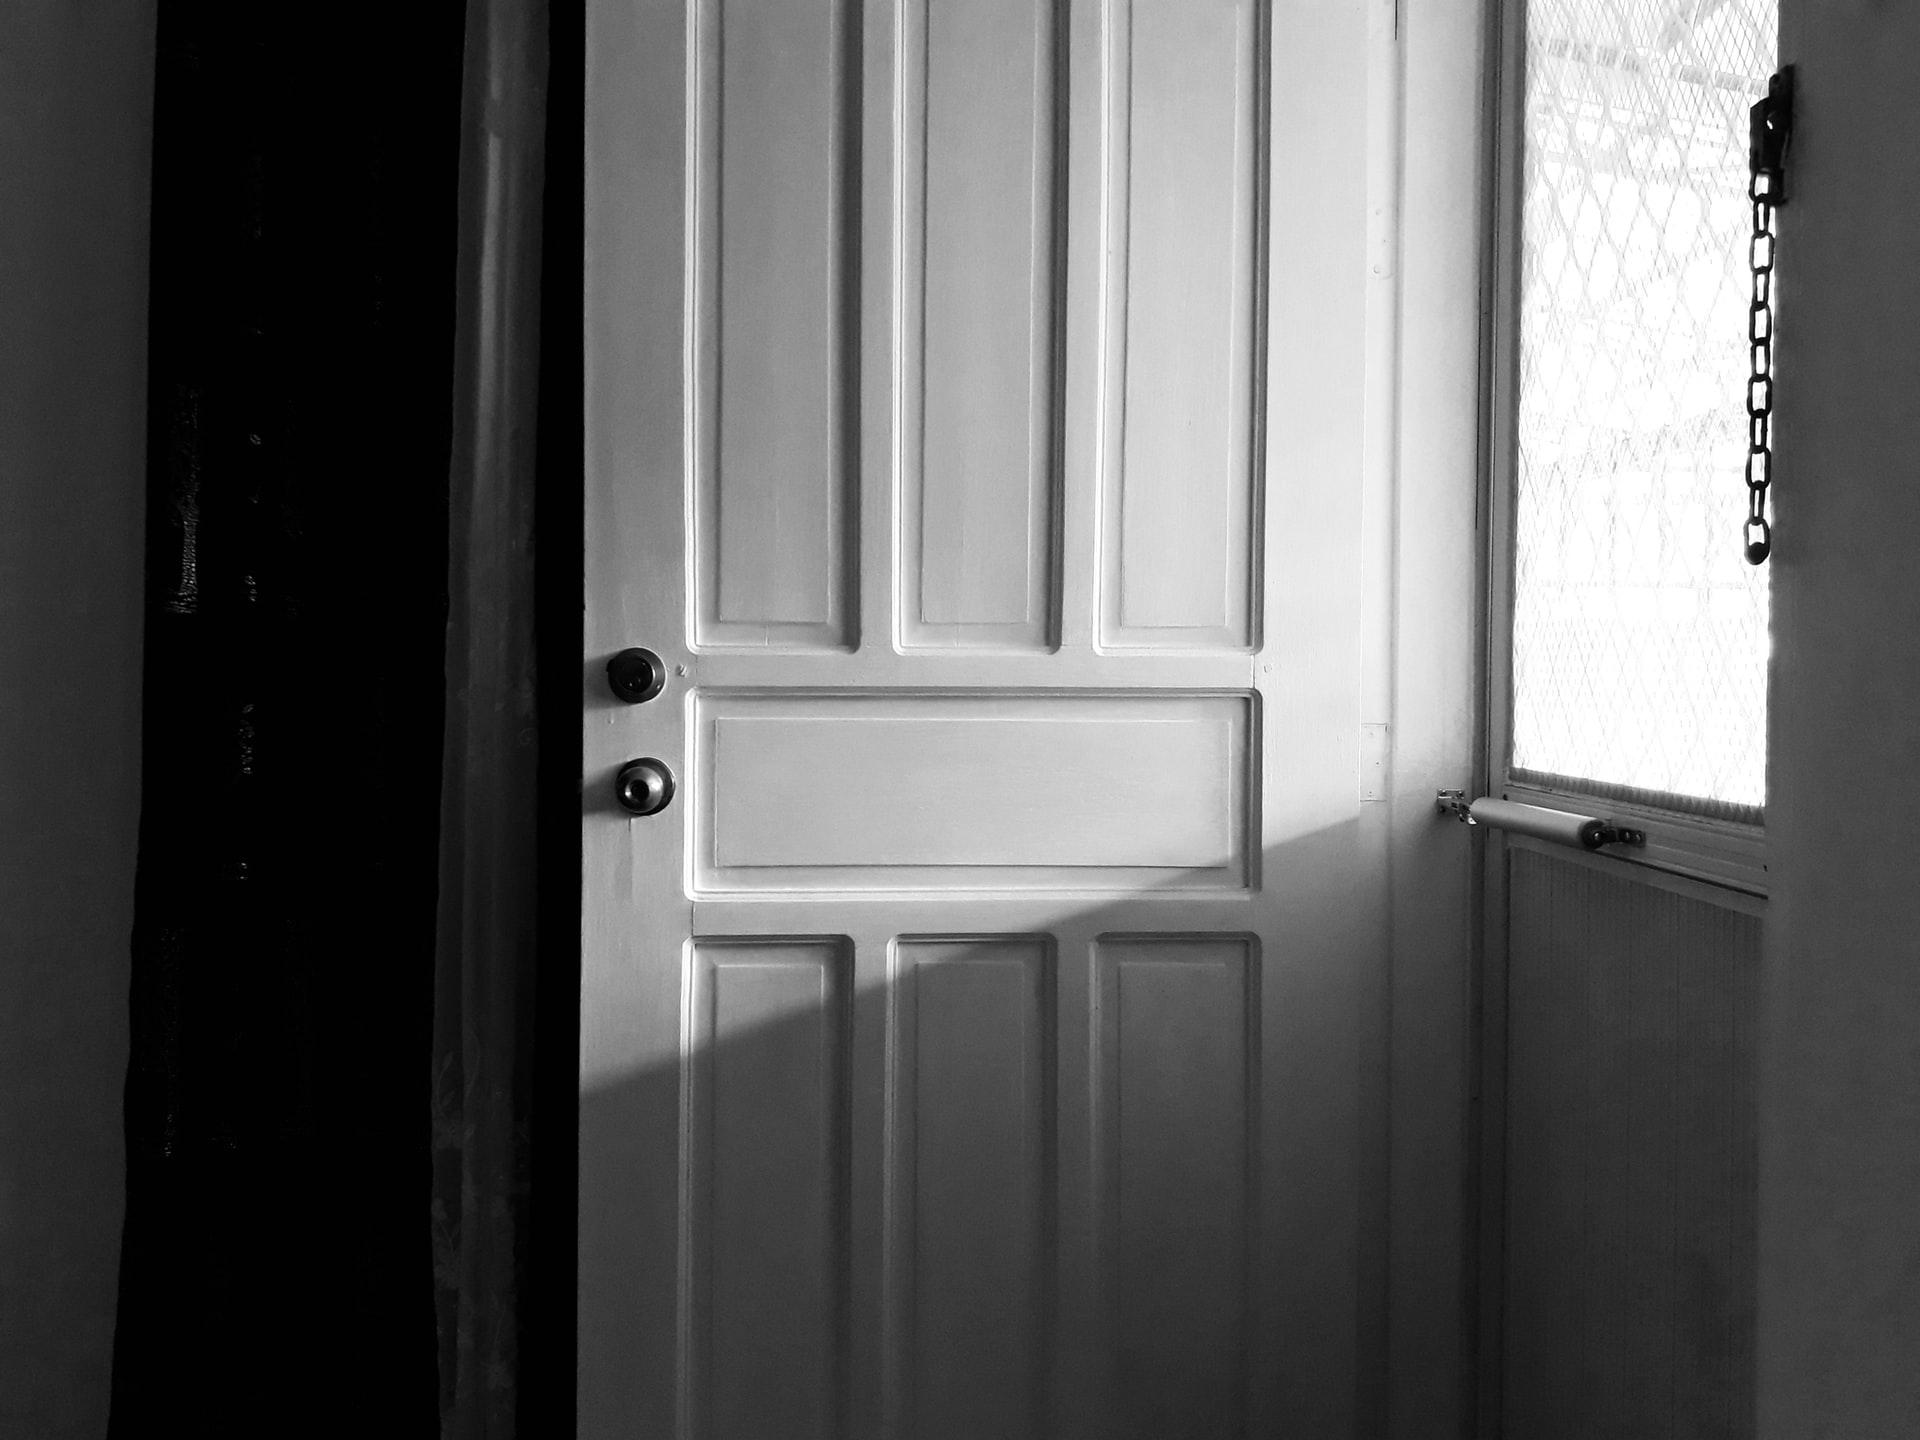 white wooden door with black door lever